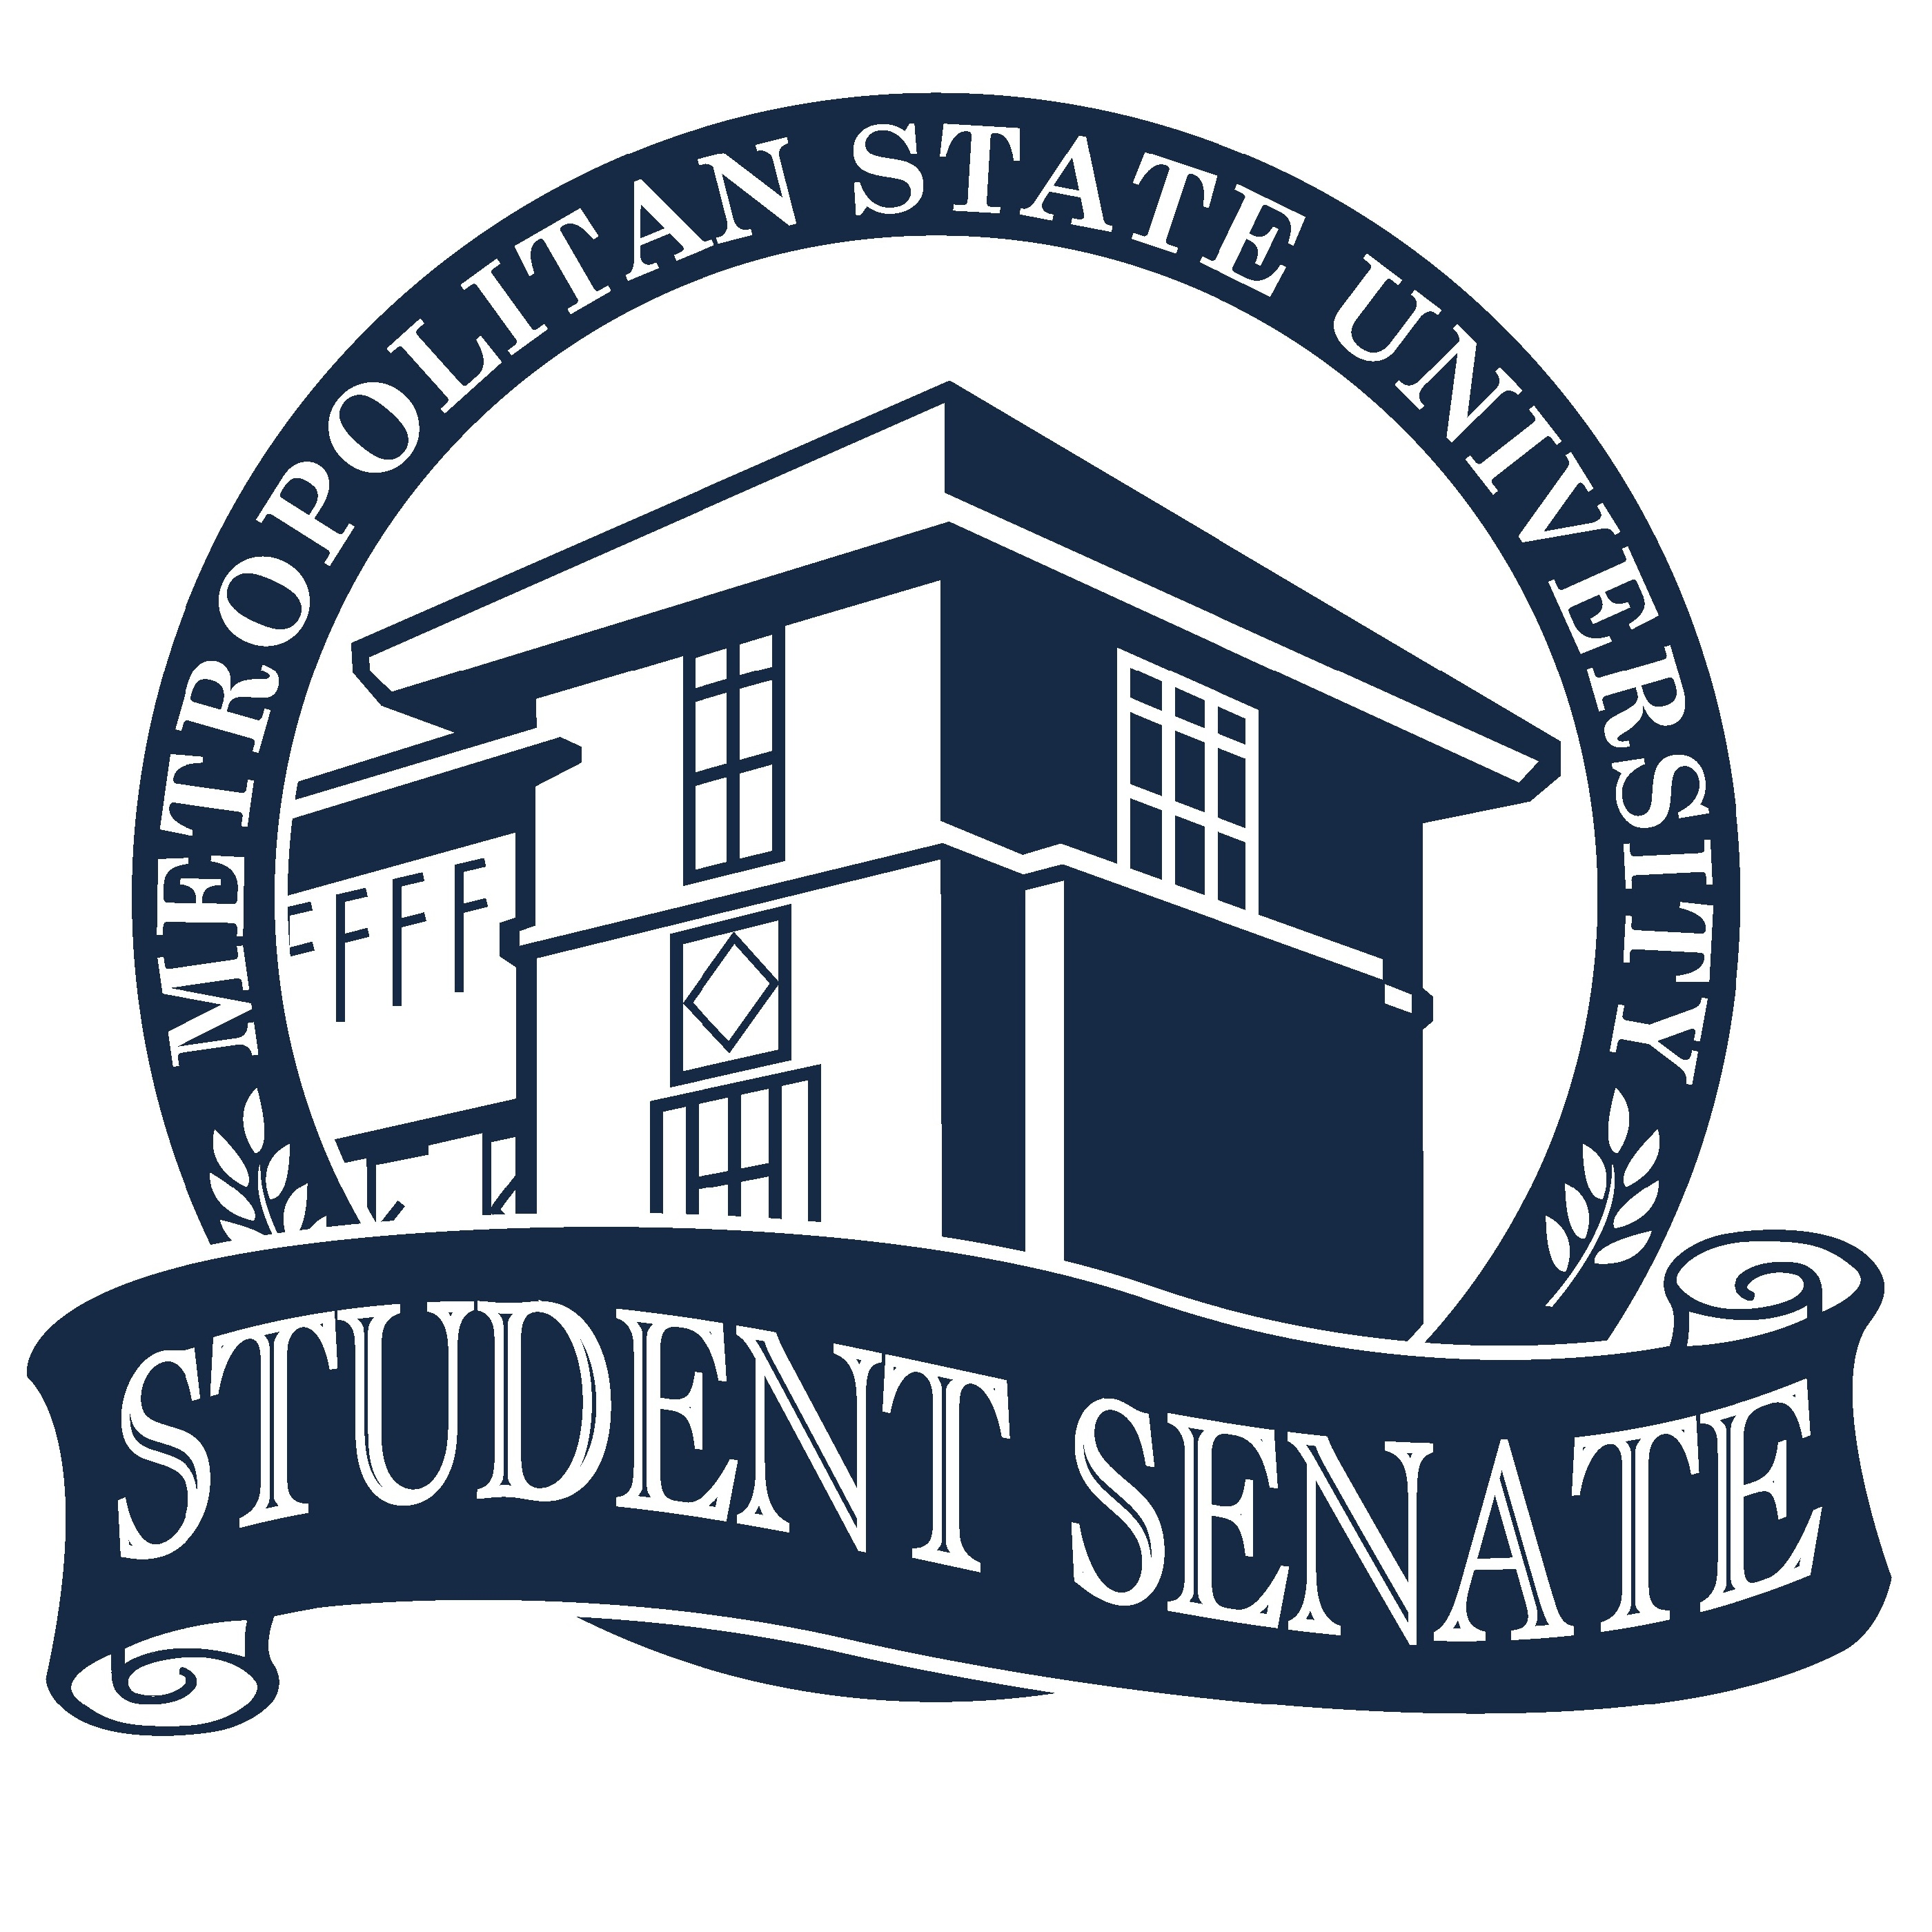 Senate Logo - Student Senate